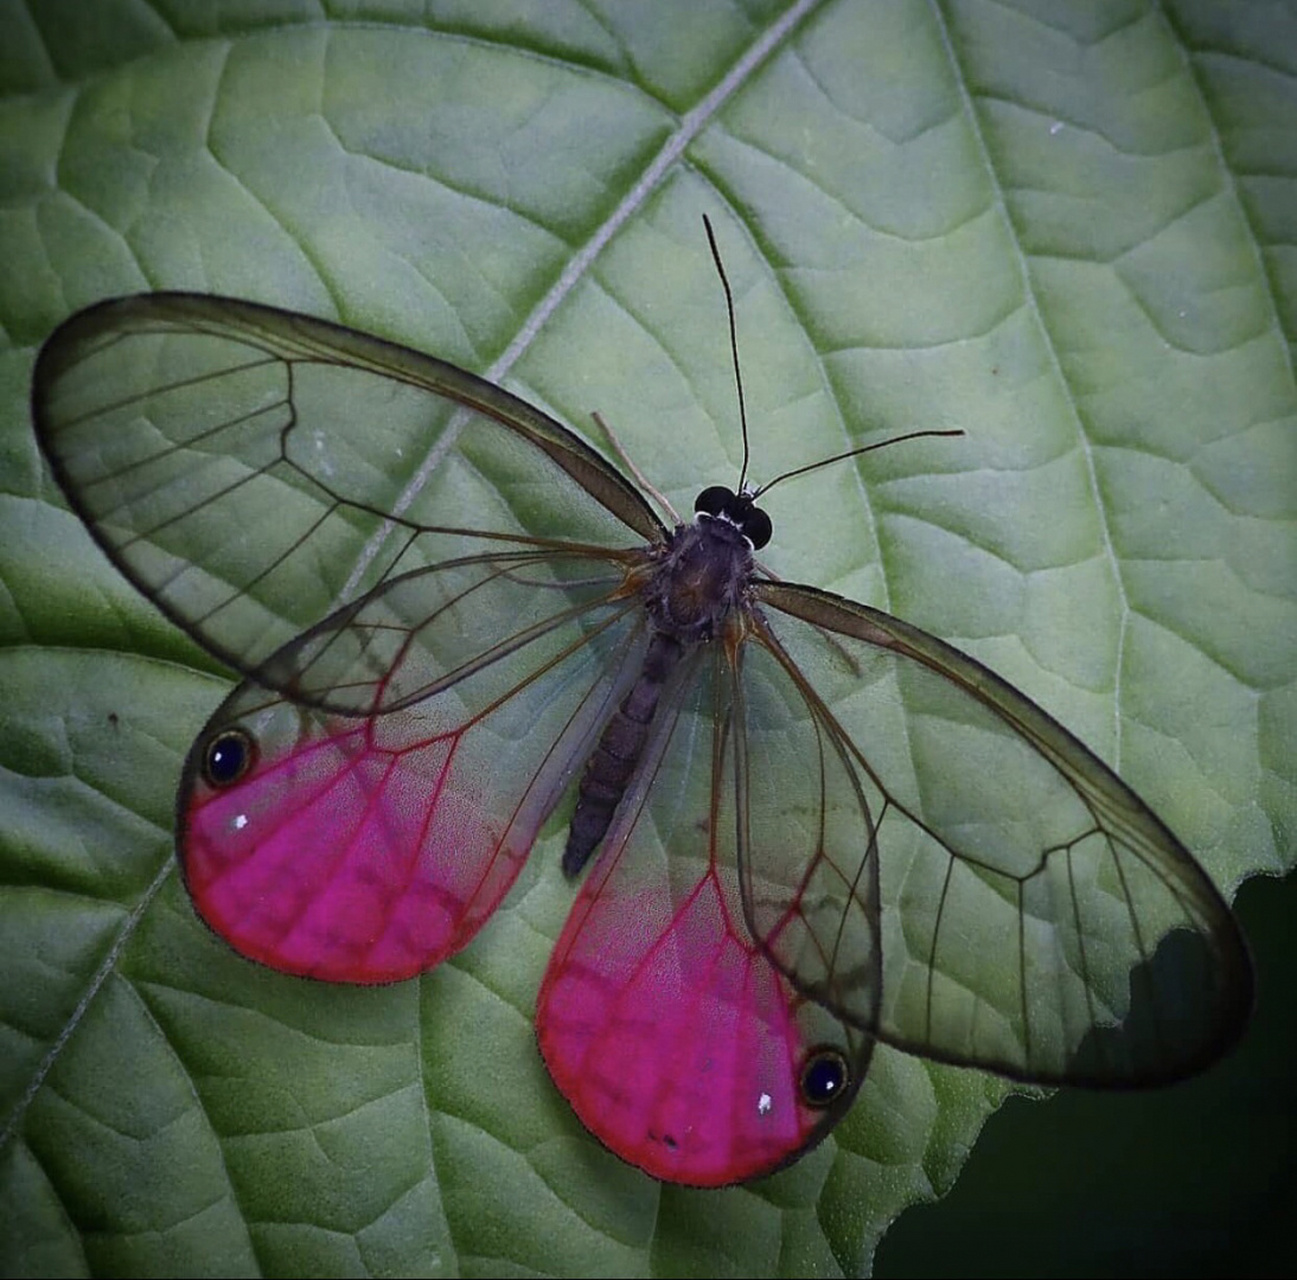 玫瑰水晶眼蝶幼虫图片图片